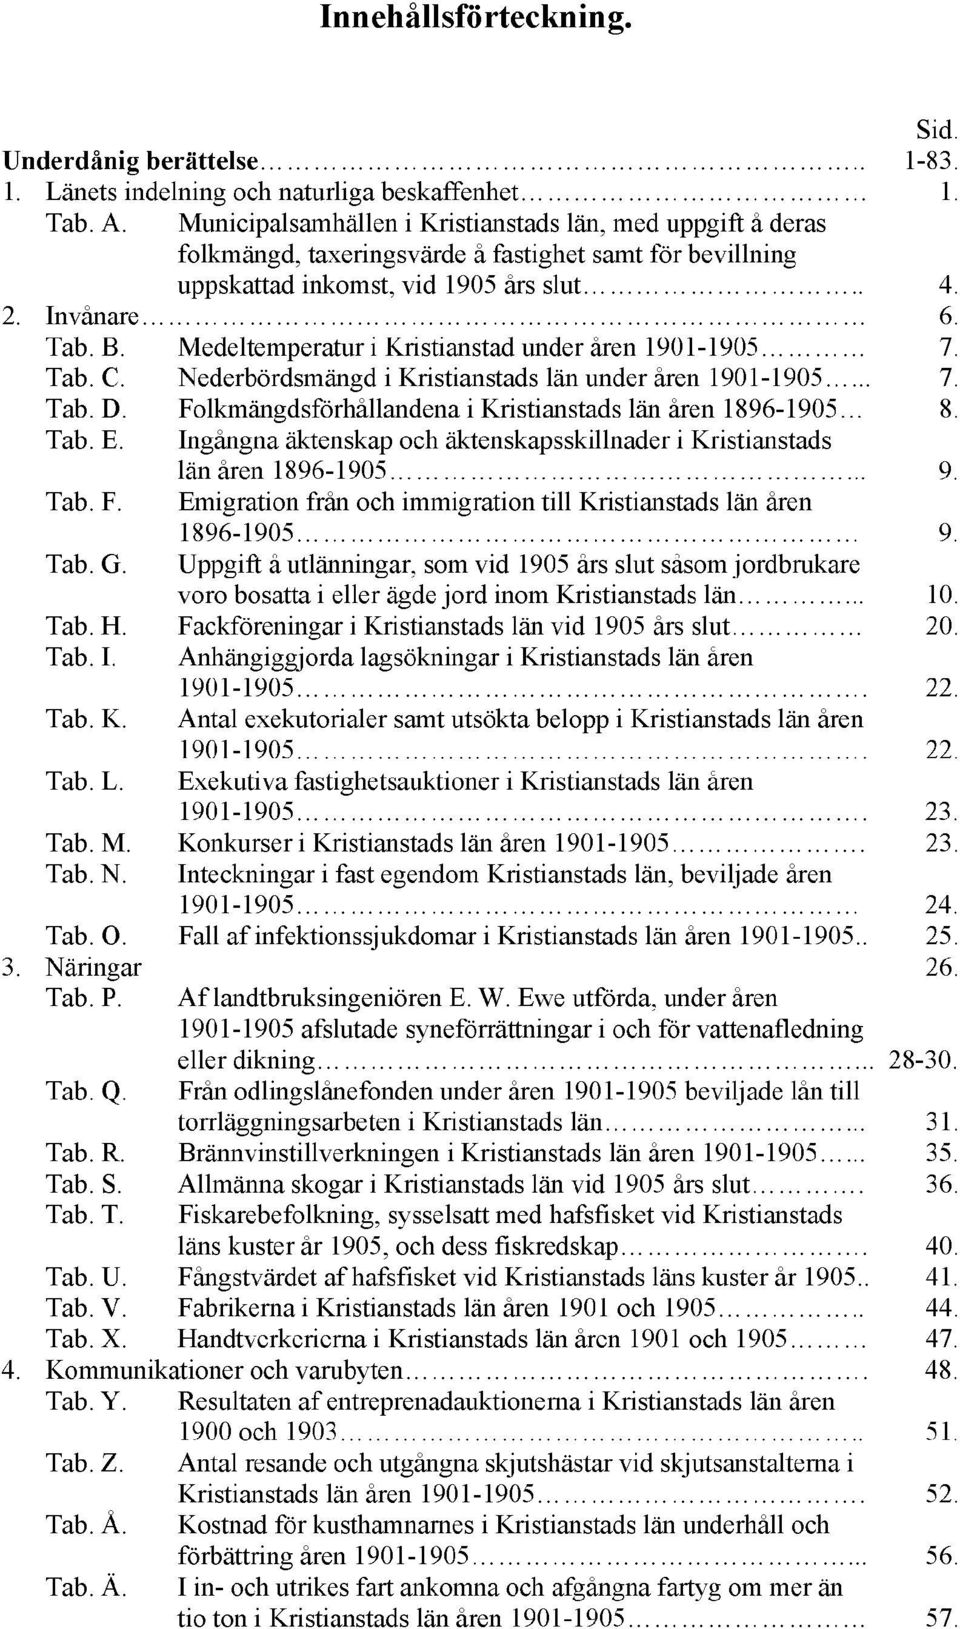 Medeltemperatur i Kristianstad under åren 1901-1905 7. Tab. C. Nederbördsmängd i Kristianstads län under åren 1901-1905... 7. Tab. D. Folkmängdsförhållandena i Kristianstads län åren 1896-1905 8. Tab. E.